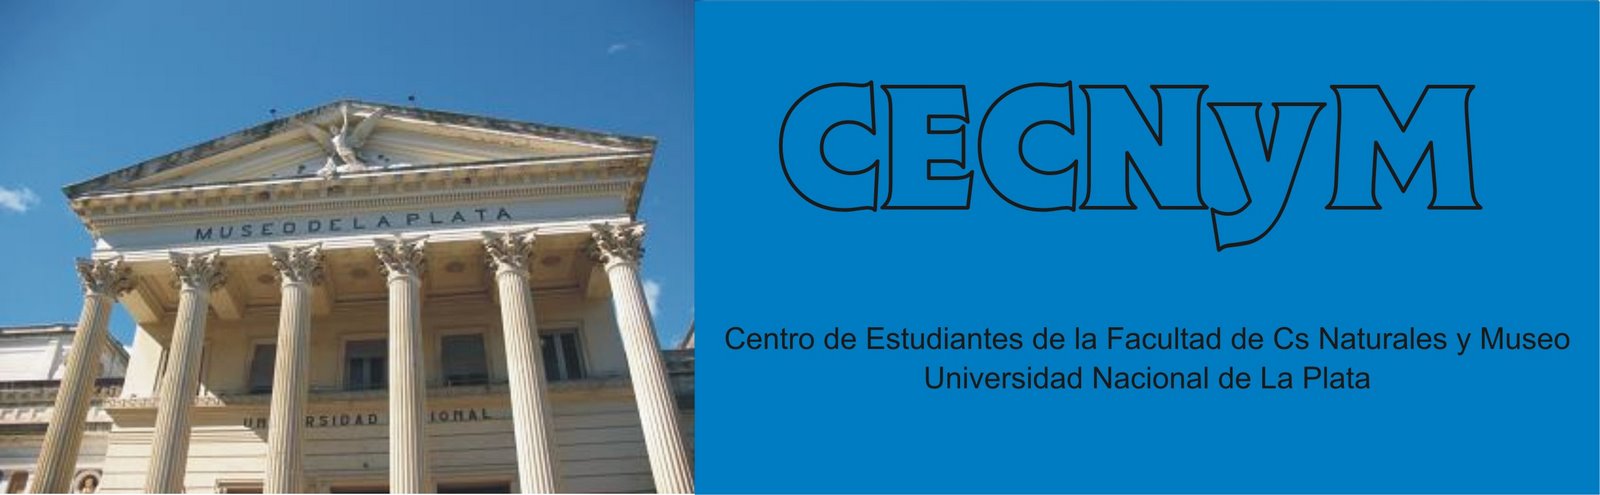 CECNyM-Centro de Estudiantes